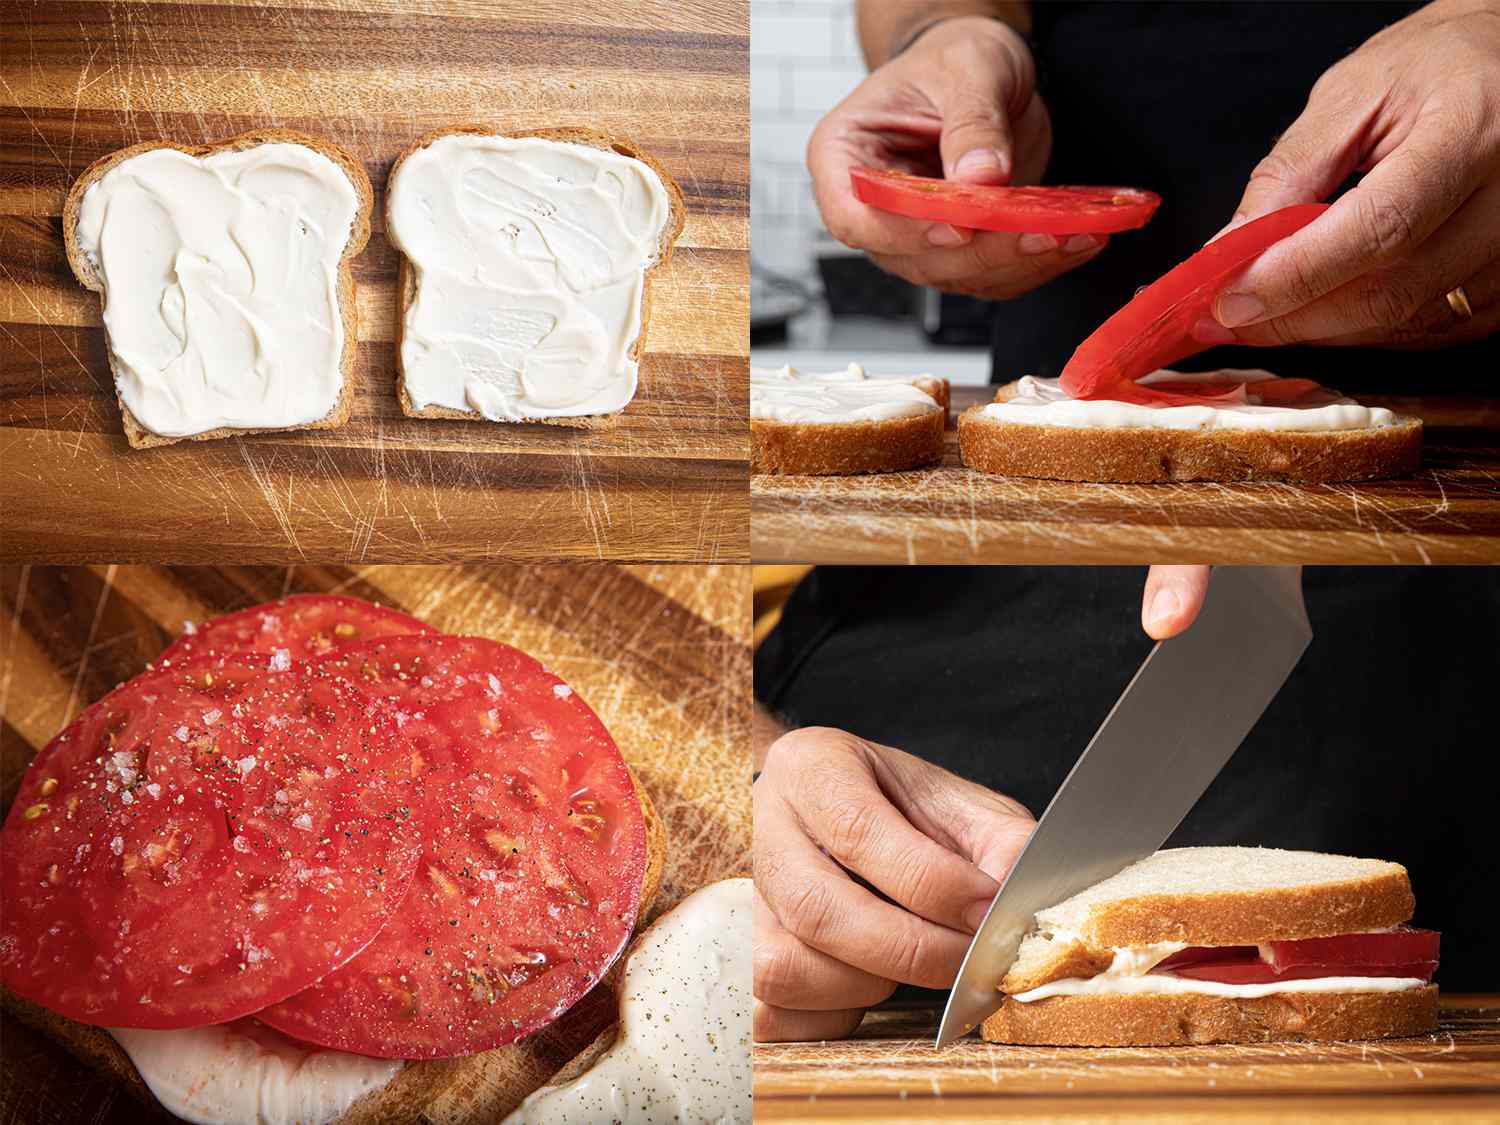 四个图像拼贴。左上:两片面包在梅奥。右上:两只手把西红柿放在面包,从侧面观察。左下:近距离的西红柿用盐和胡椒调味。右下角:侧面对角线上的番茄三明治被削减